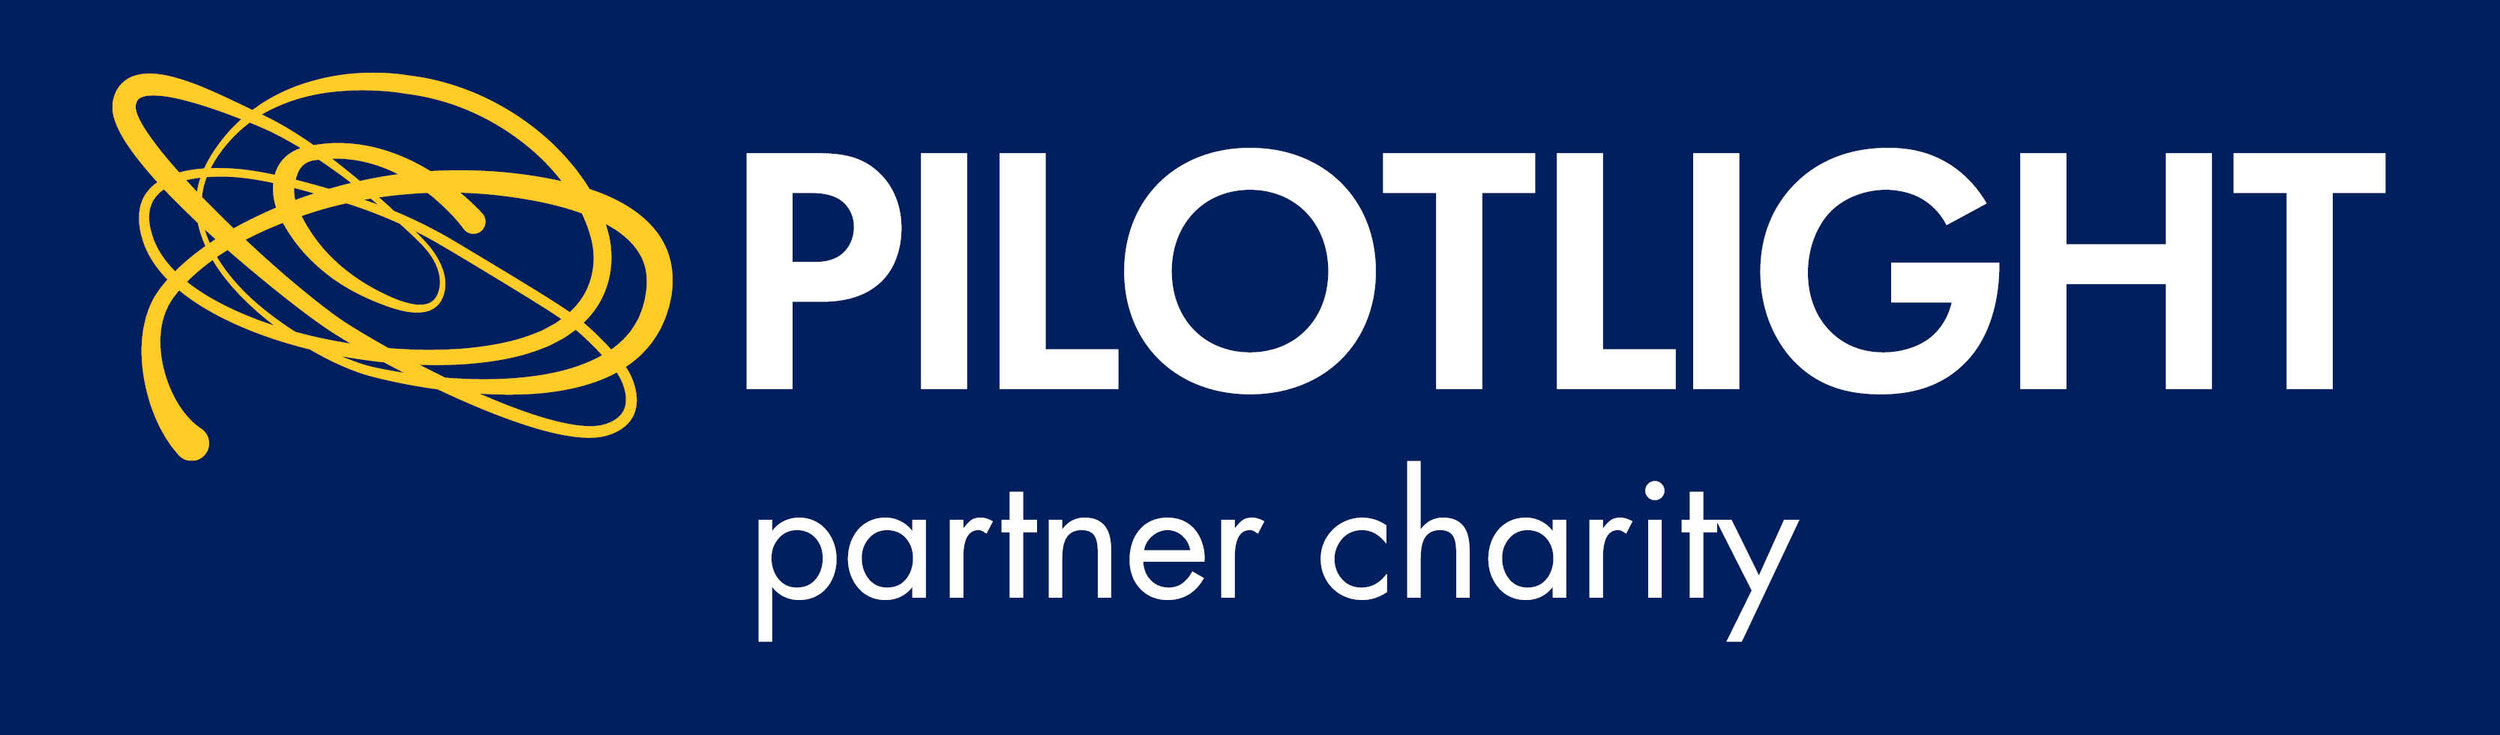 Partner Charity logo.jpg